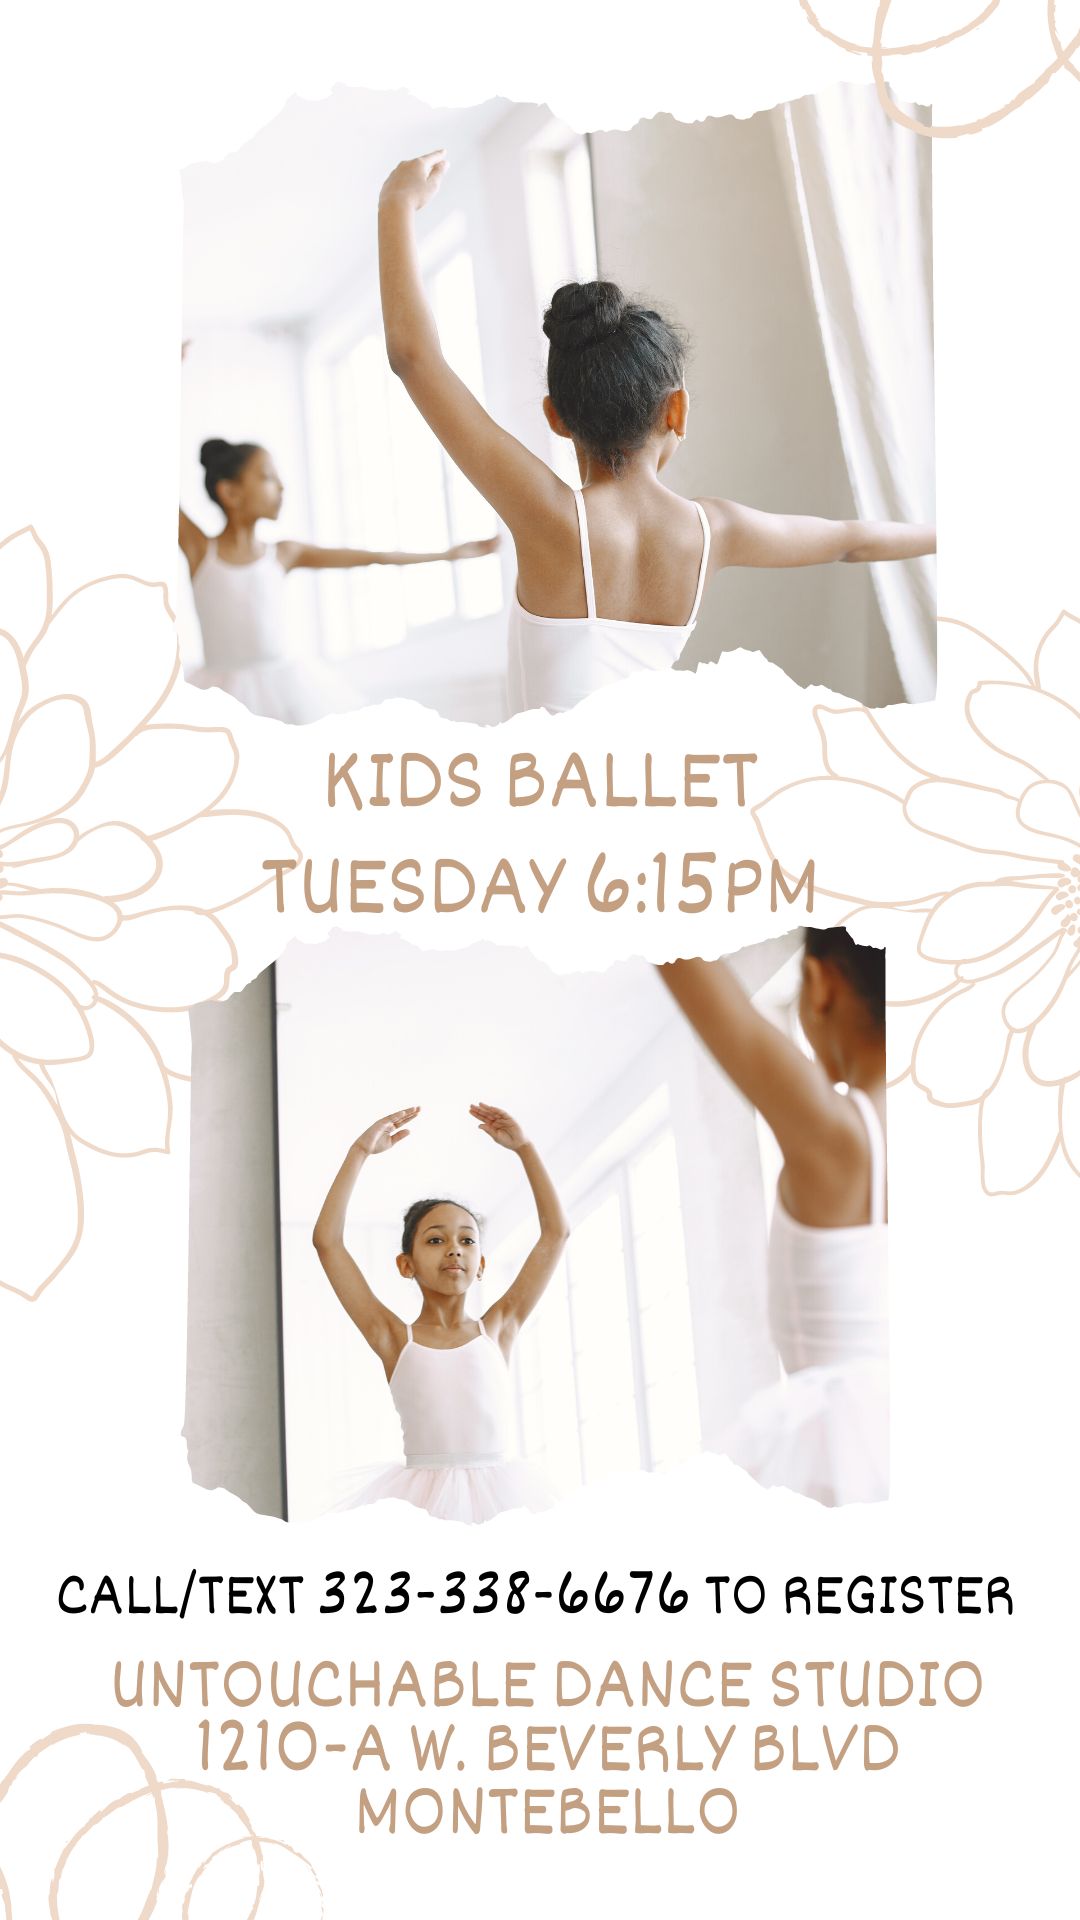 ballet dance class kids montebello untouchable<br />
